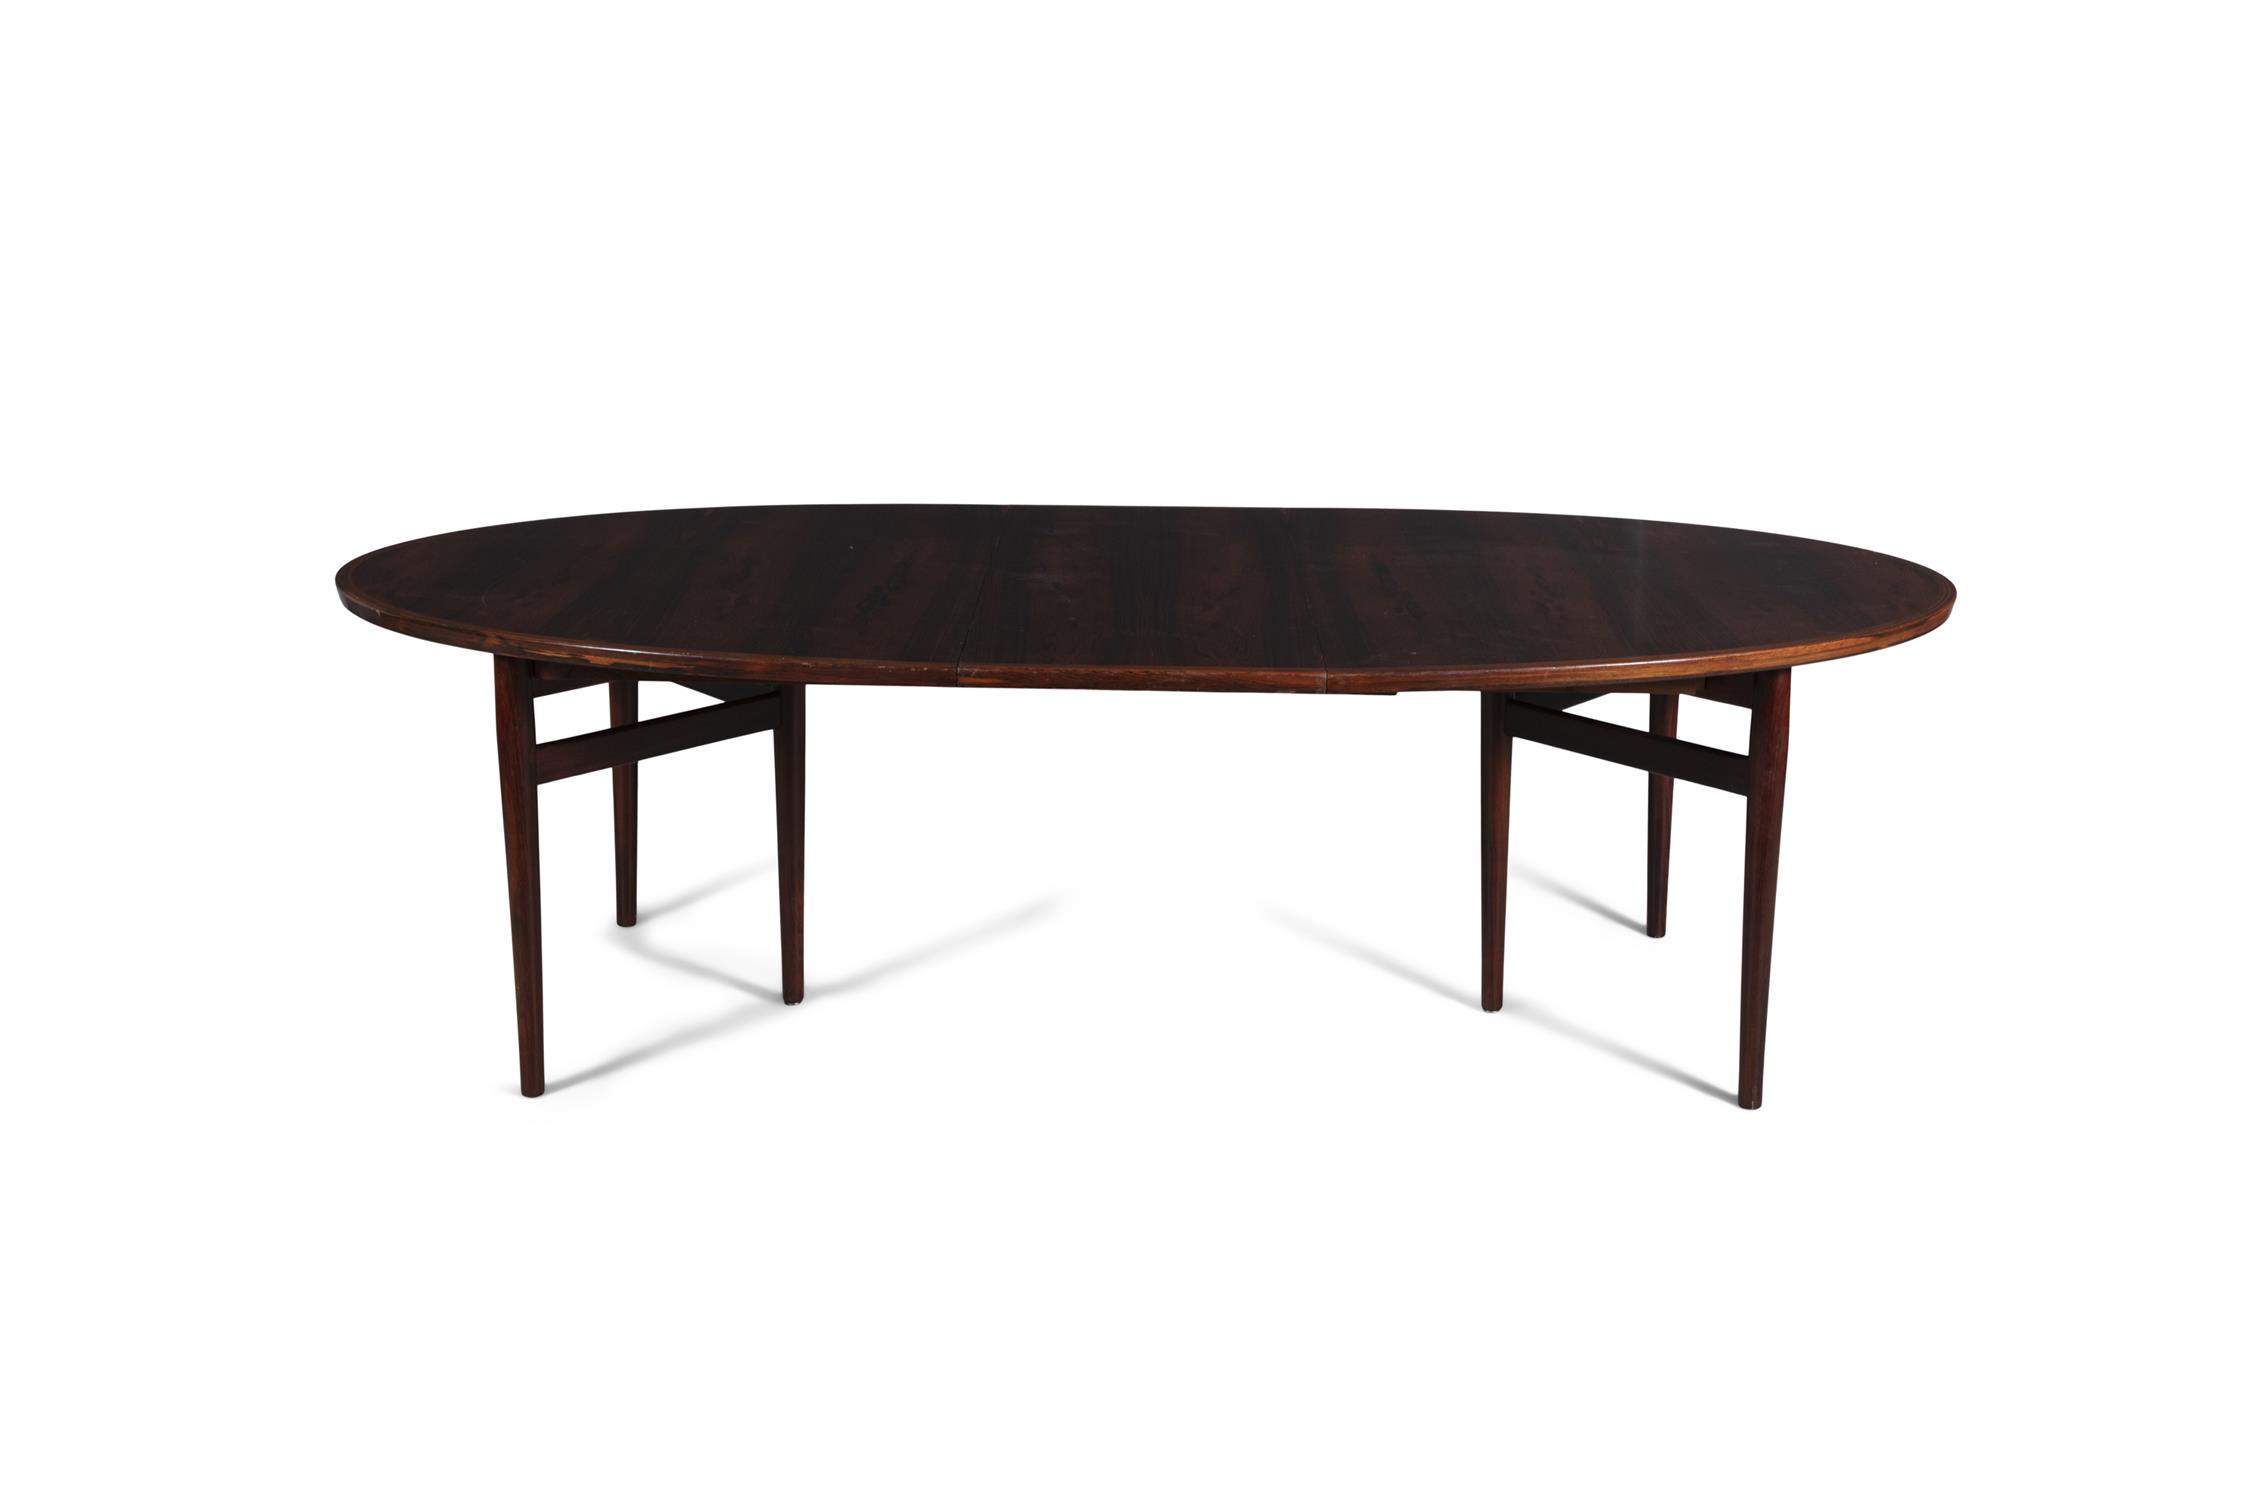 ARNE VODDER (1926-2009) A rosewood 'model 212' extending oval dining table by Arne Vodder, - Image 4 of 6